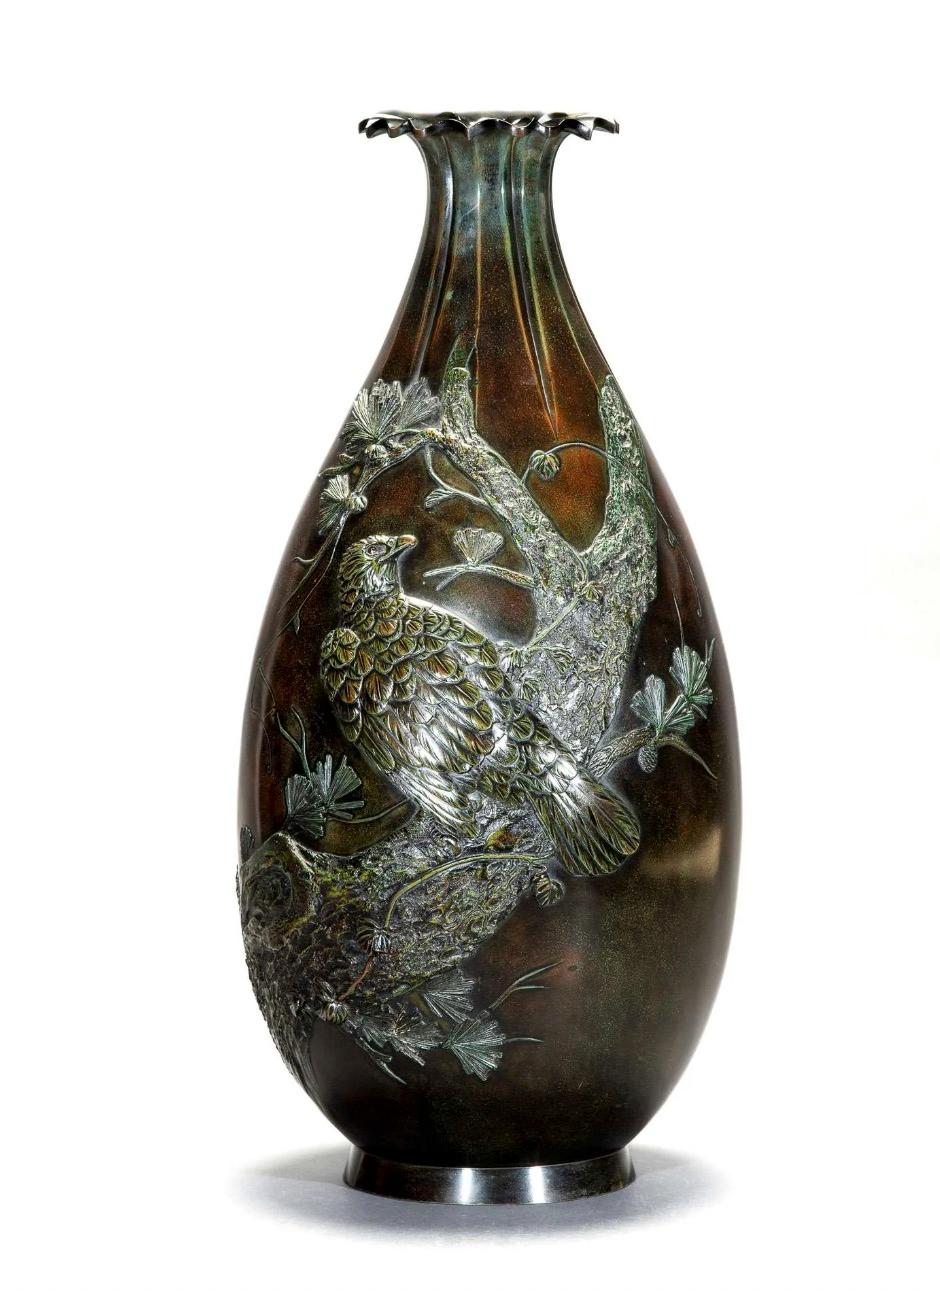 Große Bronzevase mit grünlich-rötlicher Patina, die einen Falken mit nach rechts gewandtem Kopf auf einem großen Ast darstellt, der die Vase vom Boden bis zum oberen Hals schräg umschlingt. Lappiger Rand, von dem einige Rillen ausgehen und sich